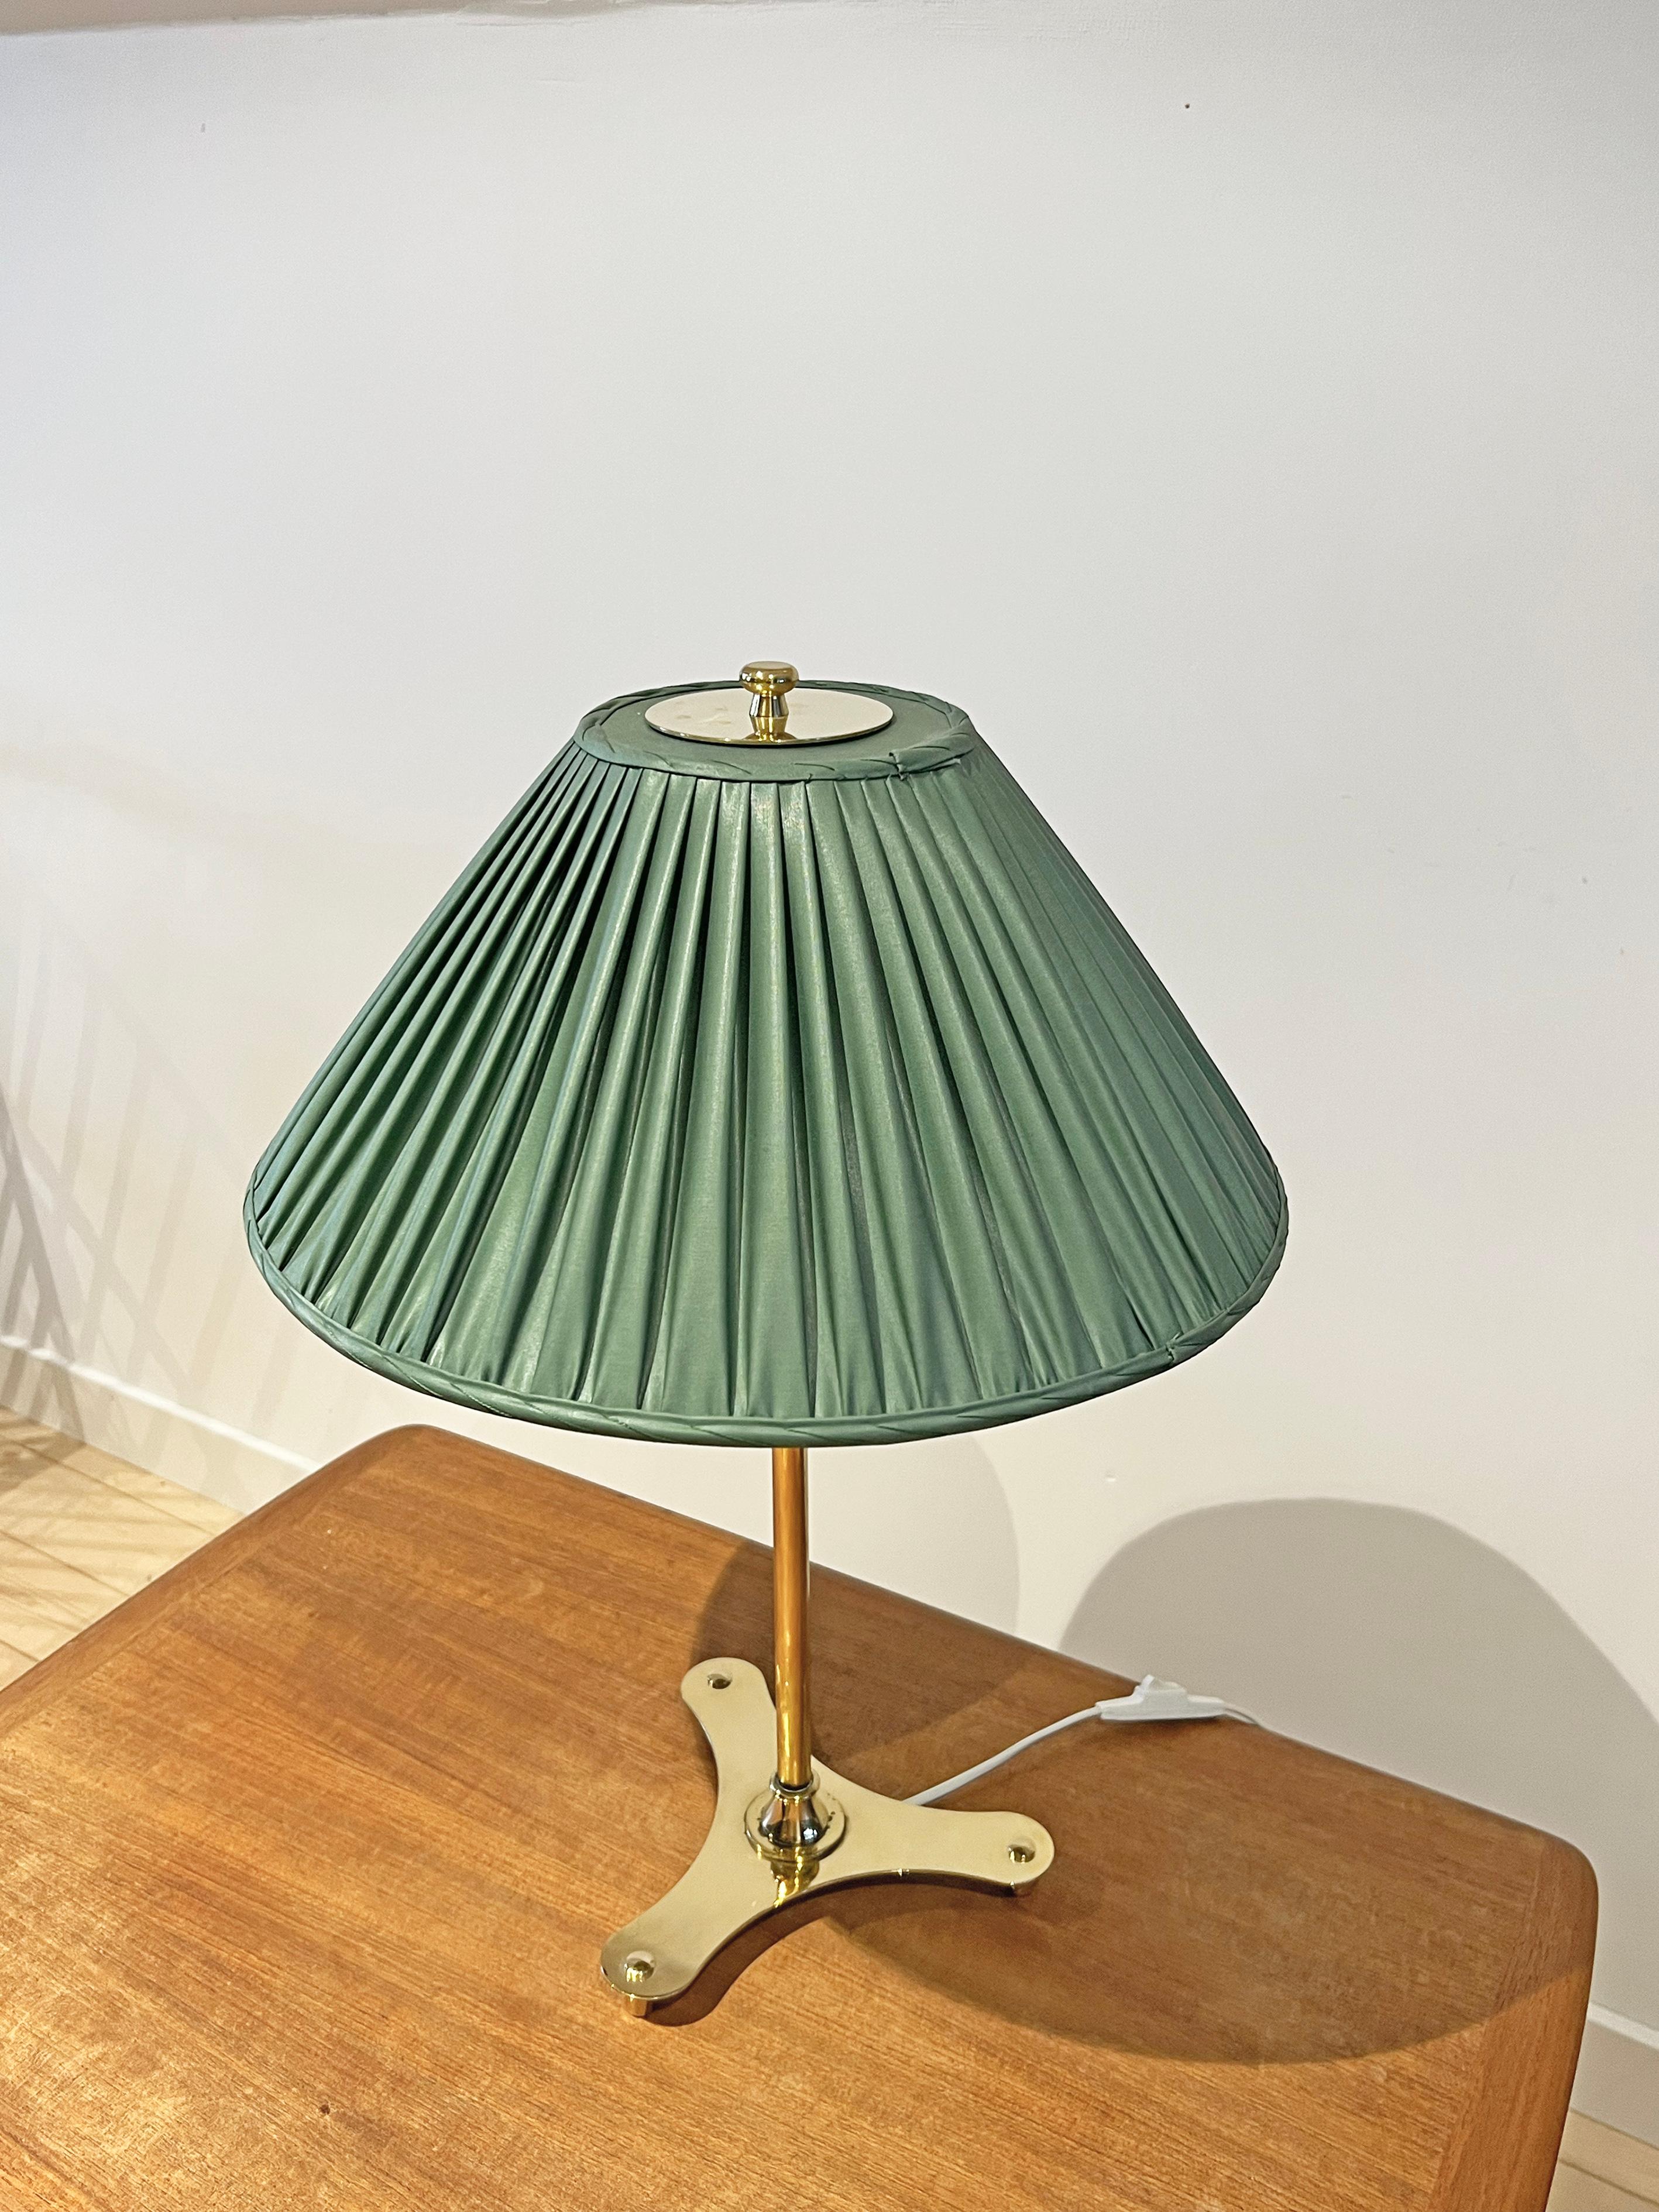 Lampe de table modèle 2467/2 conçue par Josef Frank pour Firma Svenskt Tenn, Suède,  1950s. Laiton avec abat-jour en tissu (l'abat-jour est très probablement d'origine). 
Signé avec la marque du fabricant. 
Ce modèle figure dans le catalogue de